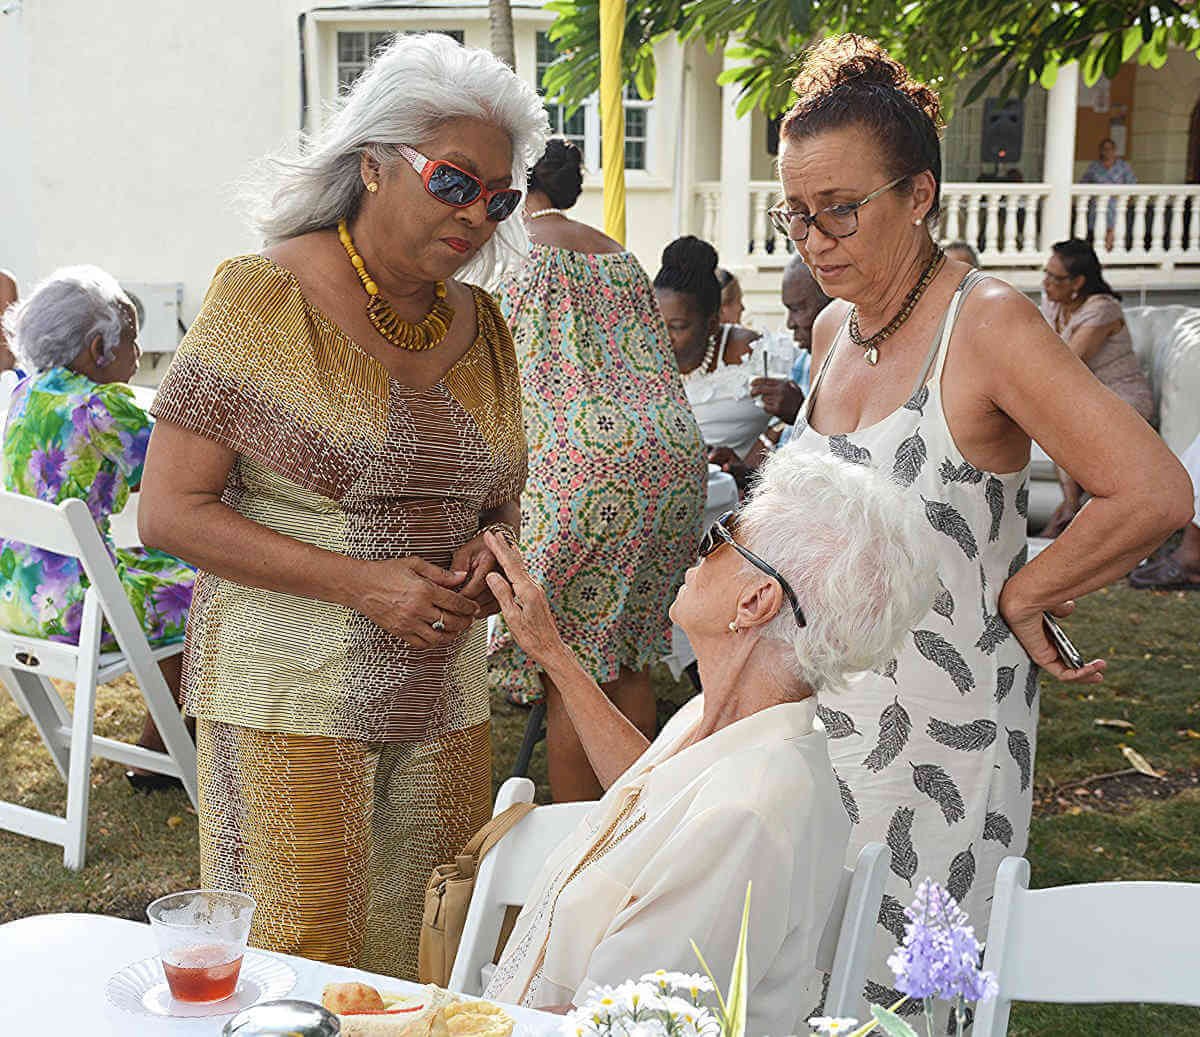 Guyanese pensioners feted in Barbados|Guyanese pensioners feted in Barbados|Guyanese pensioners feted in Barbados|Guyanese pensioners feted in Barbados